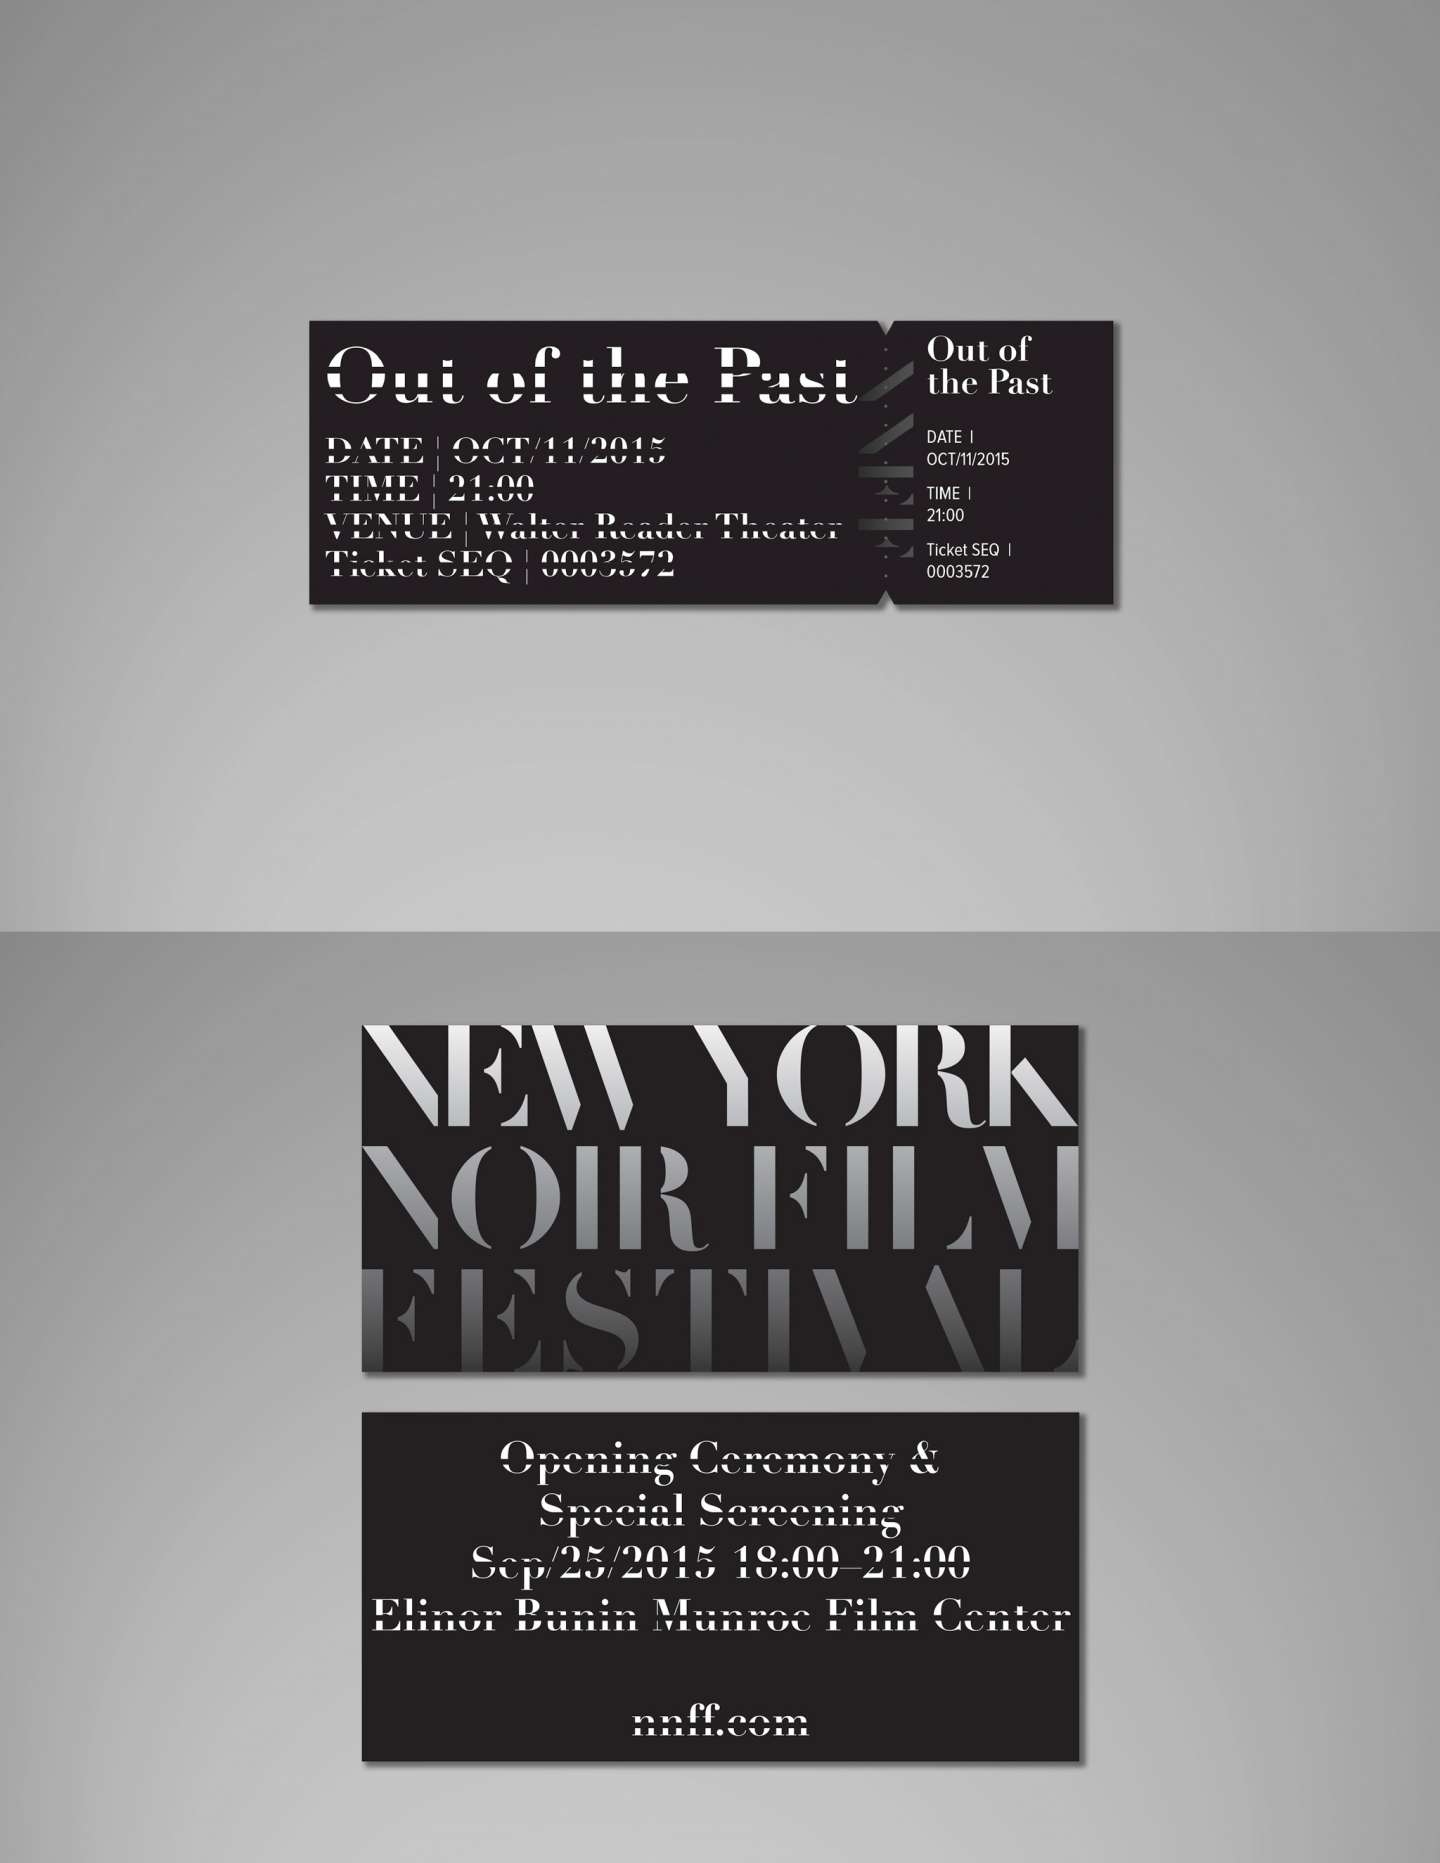 New York Film Festival